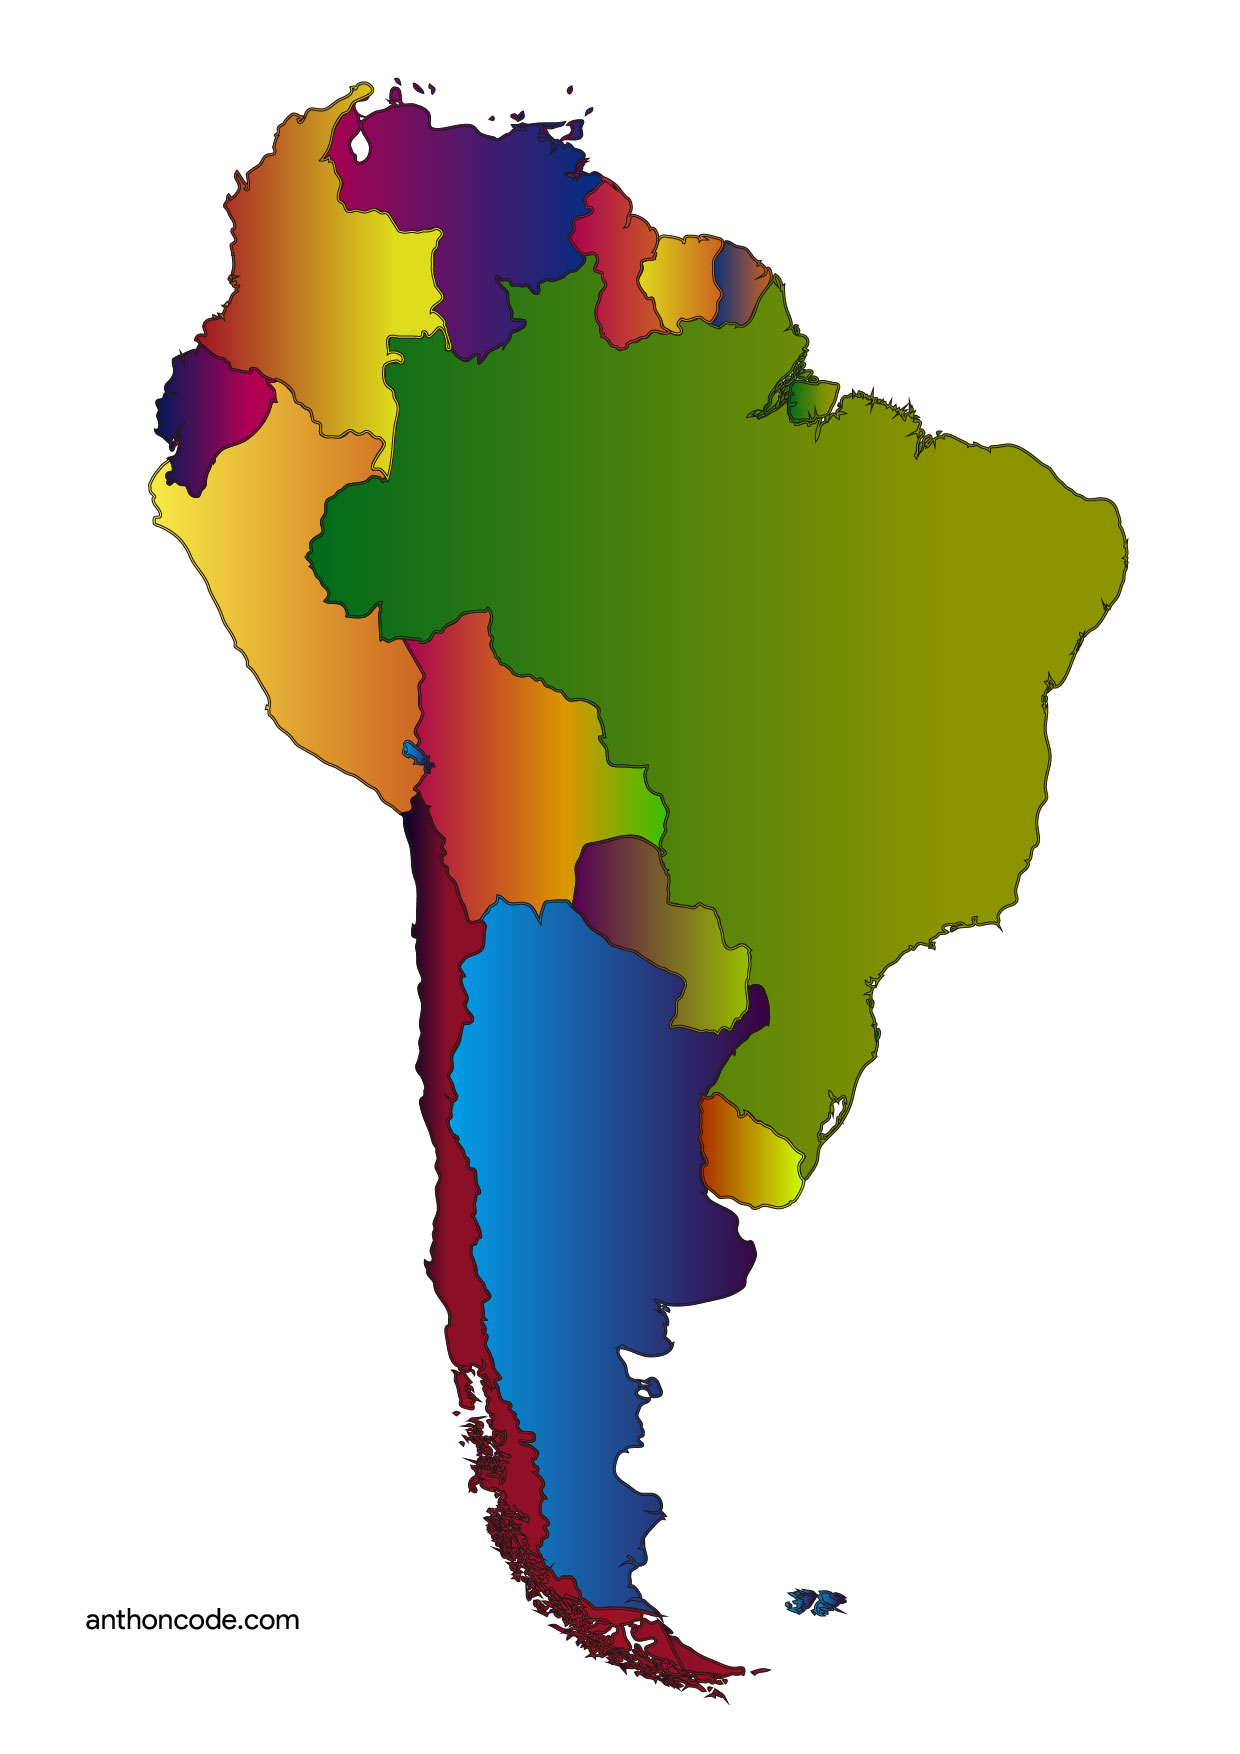 Juegos de Geografía | Juego de Localiza los países de Sudamérica